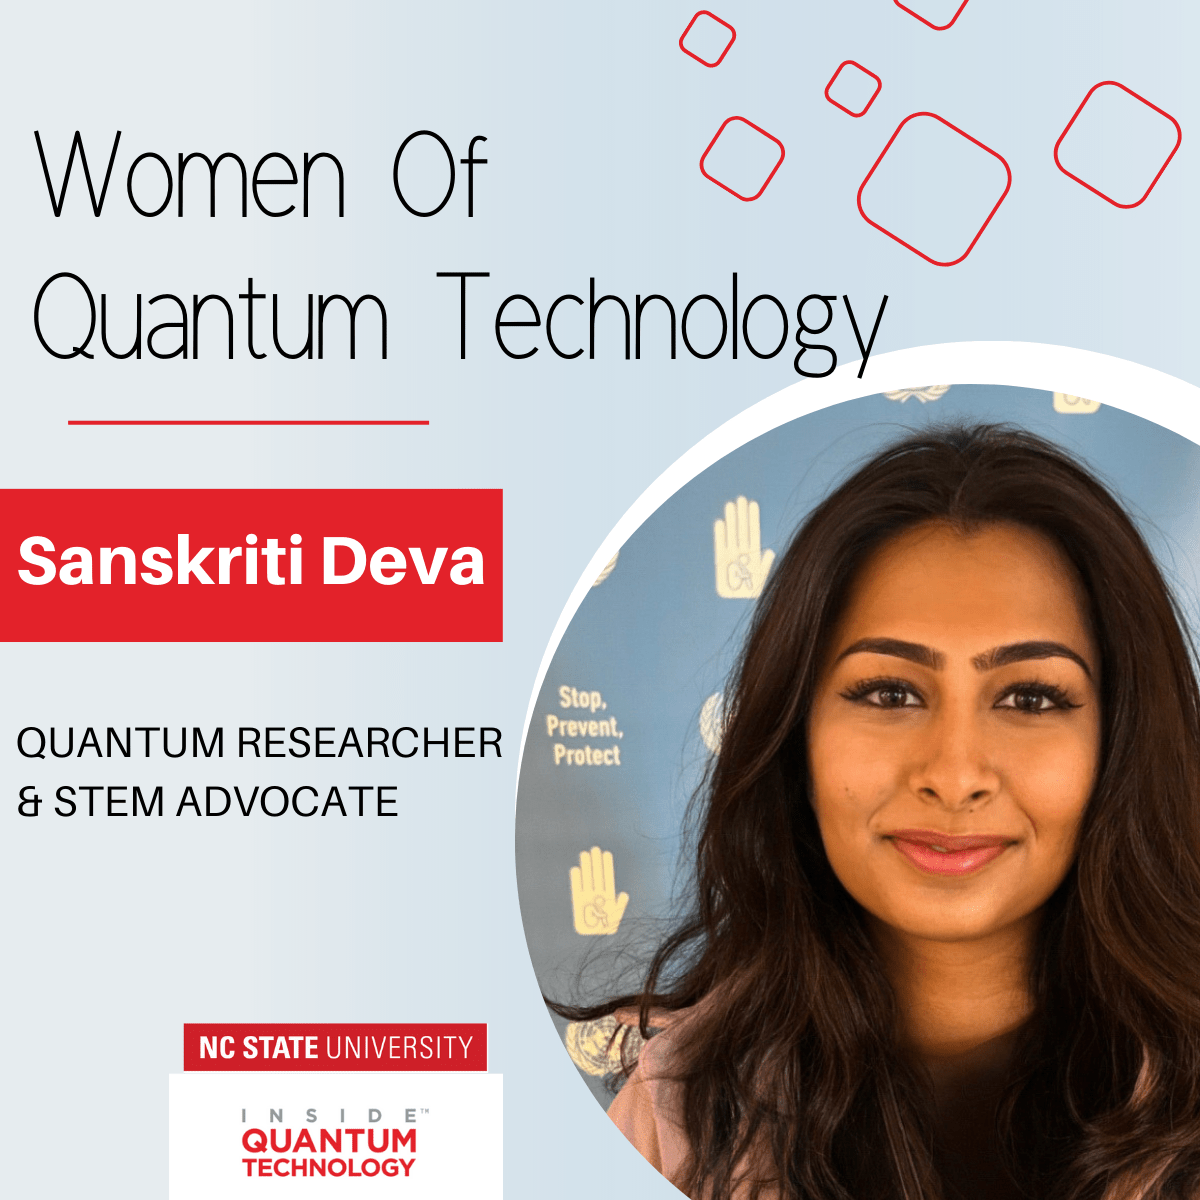 Women of Quantum: Sanskriti Deva, kvantummérnök és a legfiatalabb megválasztott ENSZ-képviselő – Inside Quantum Technology